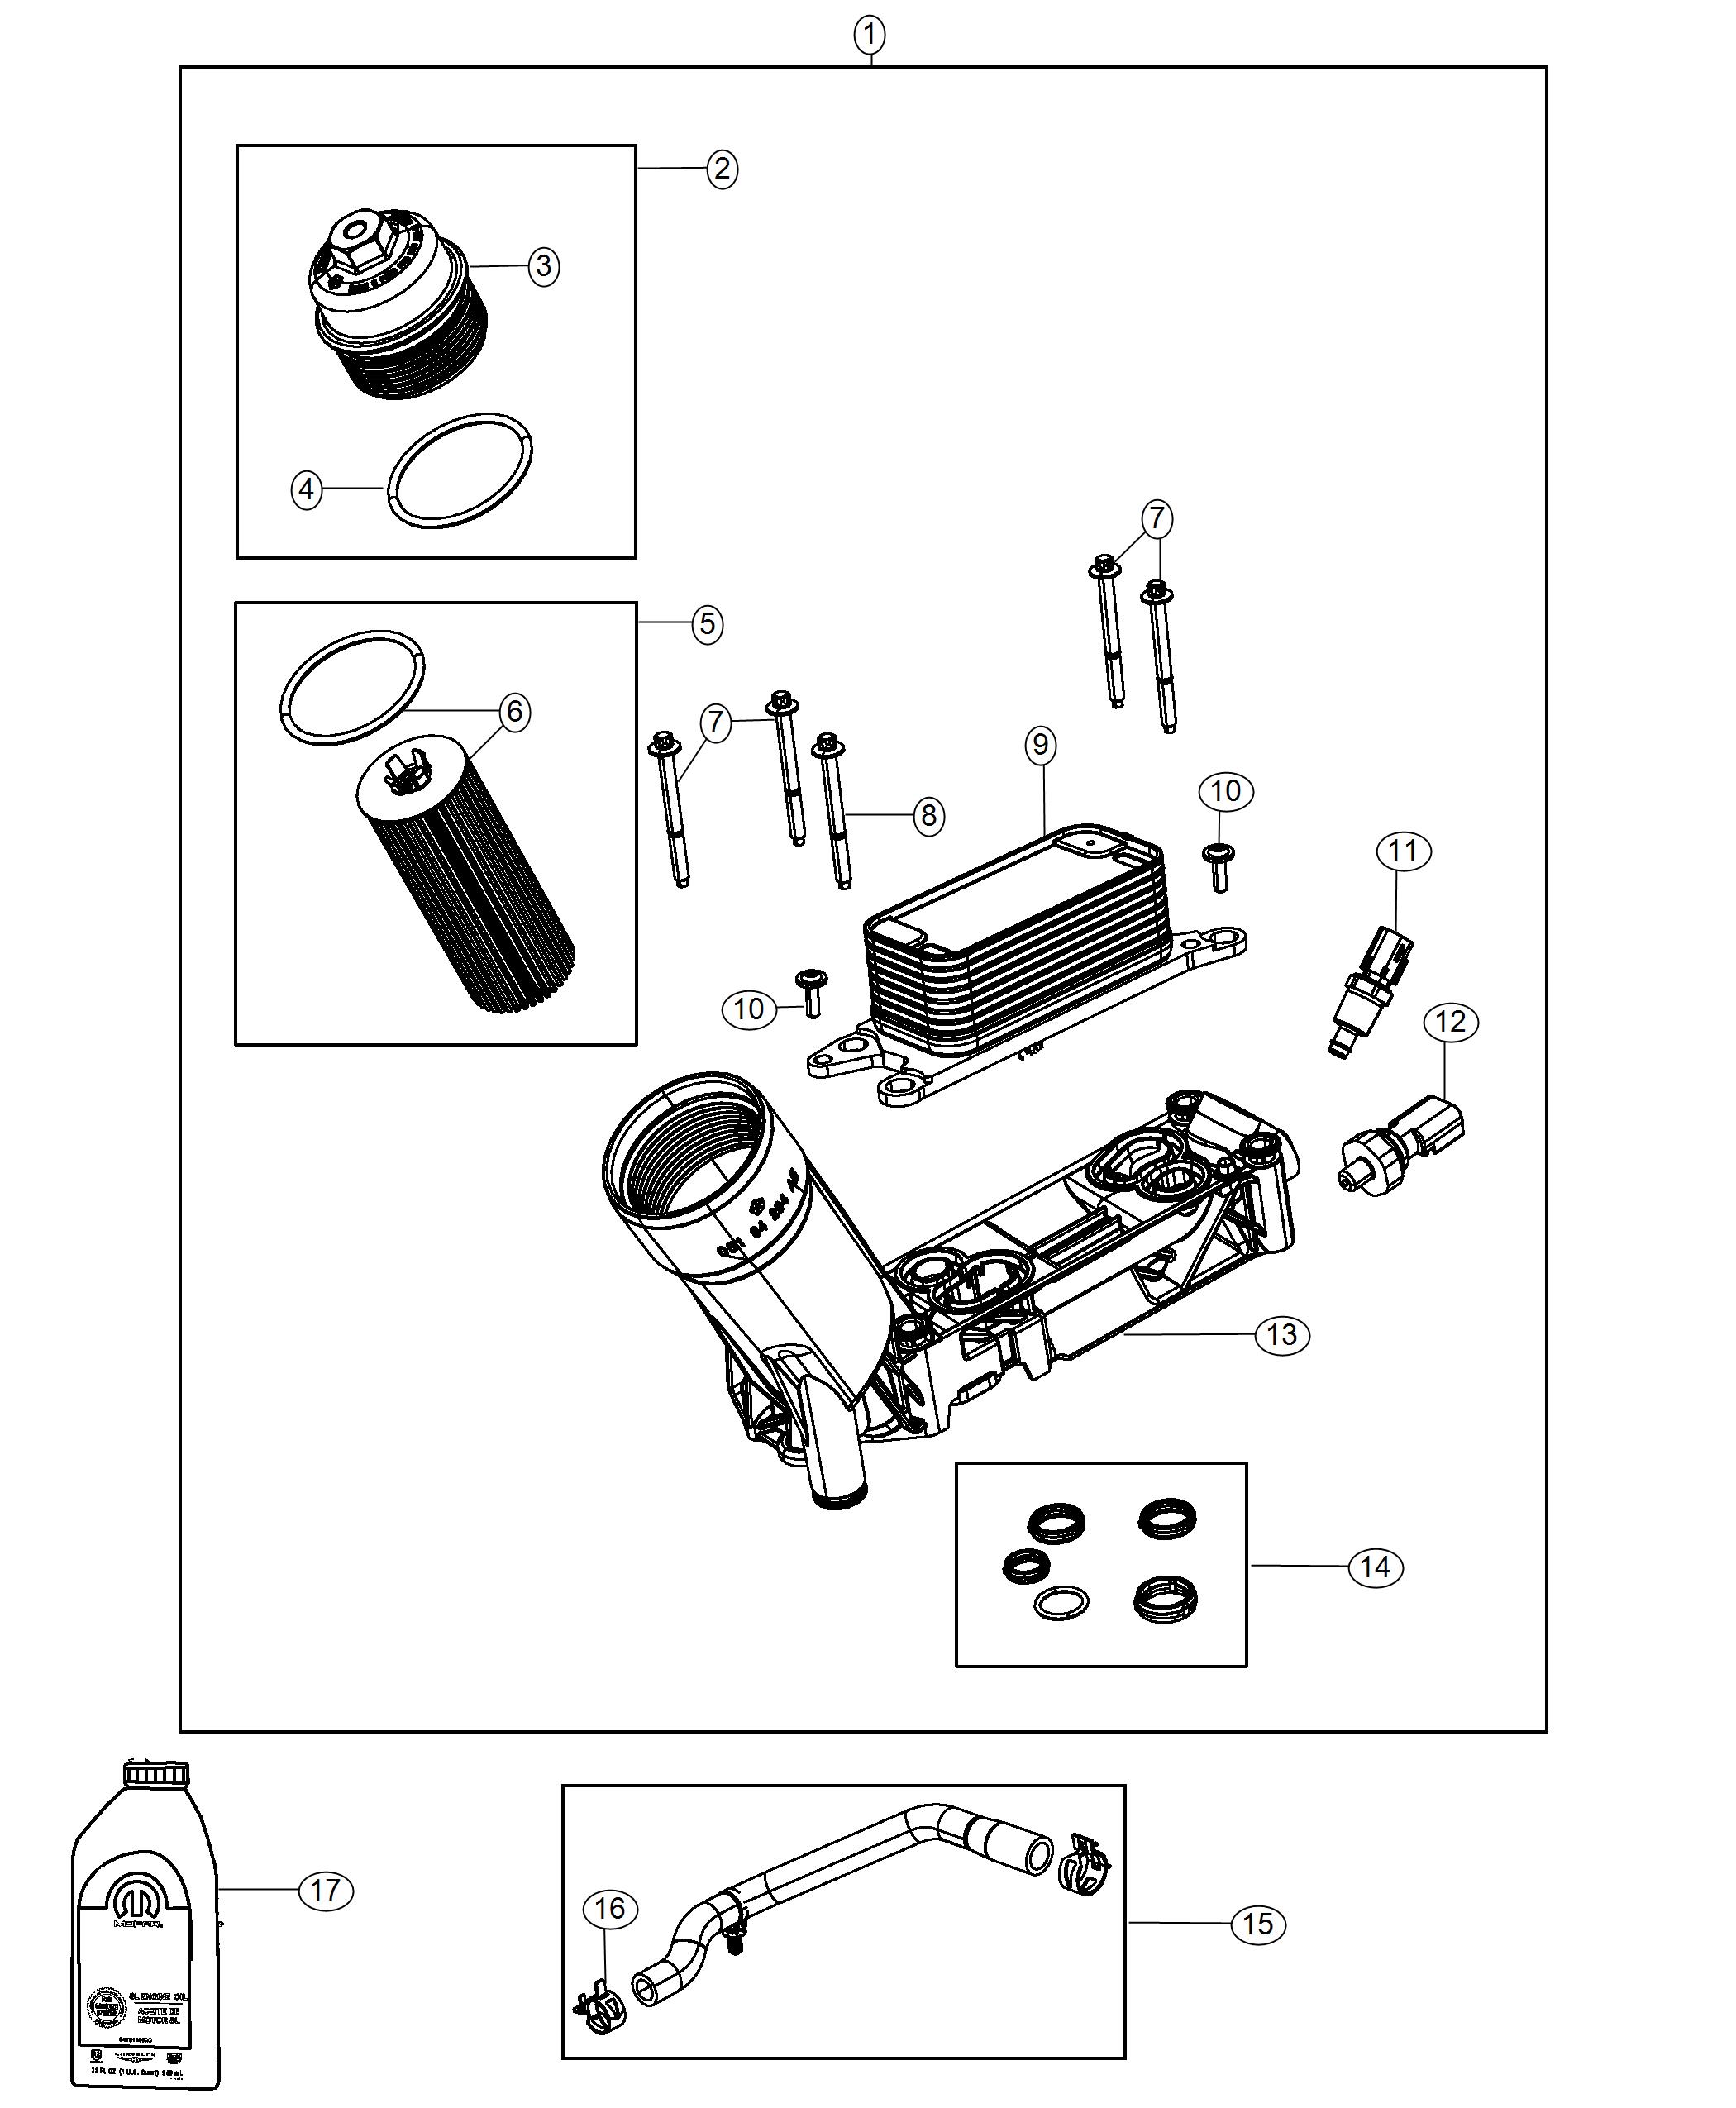 Engine Oil, Filter, Adapter/Cooler 3.0L. Diagram